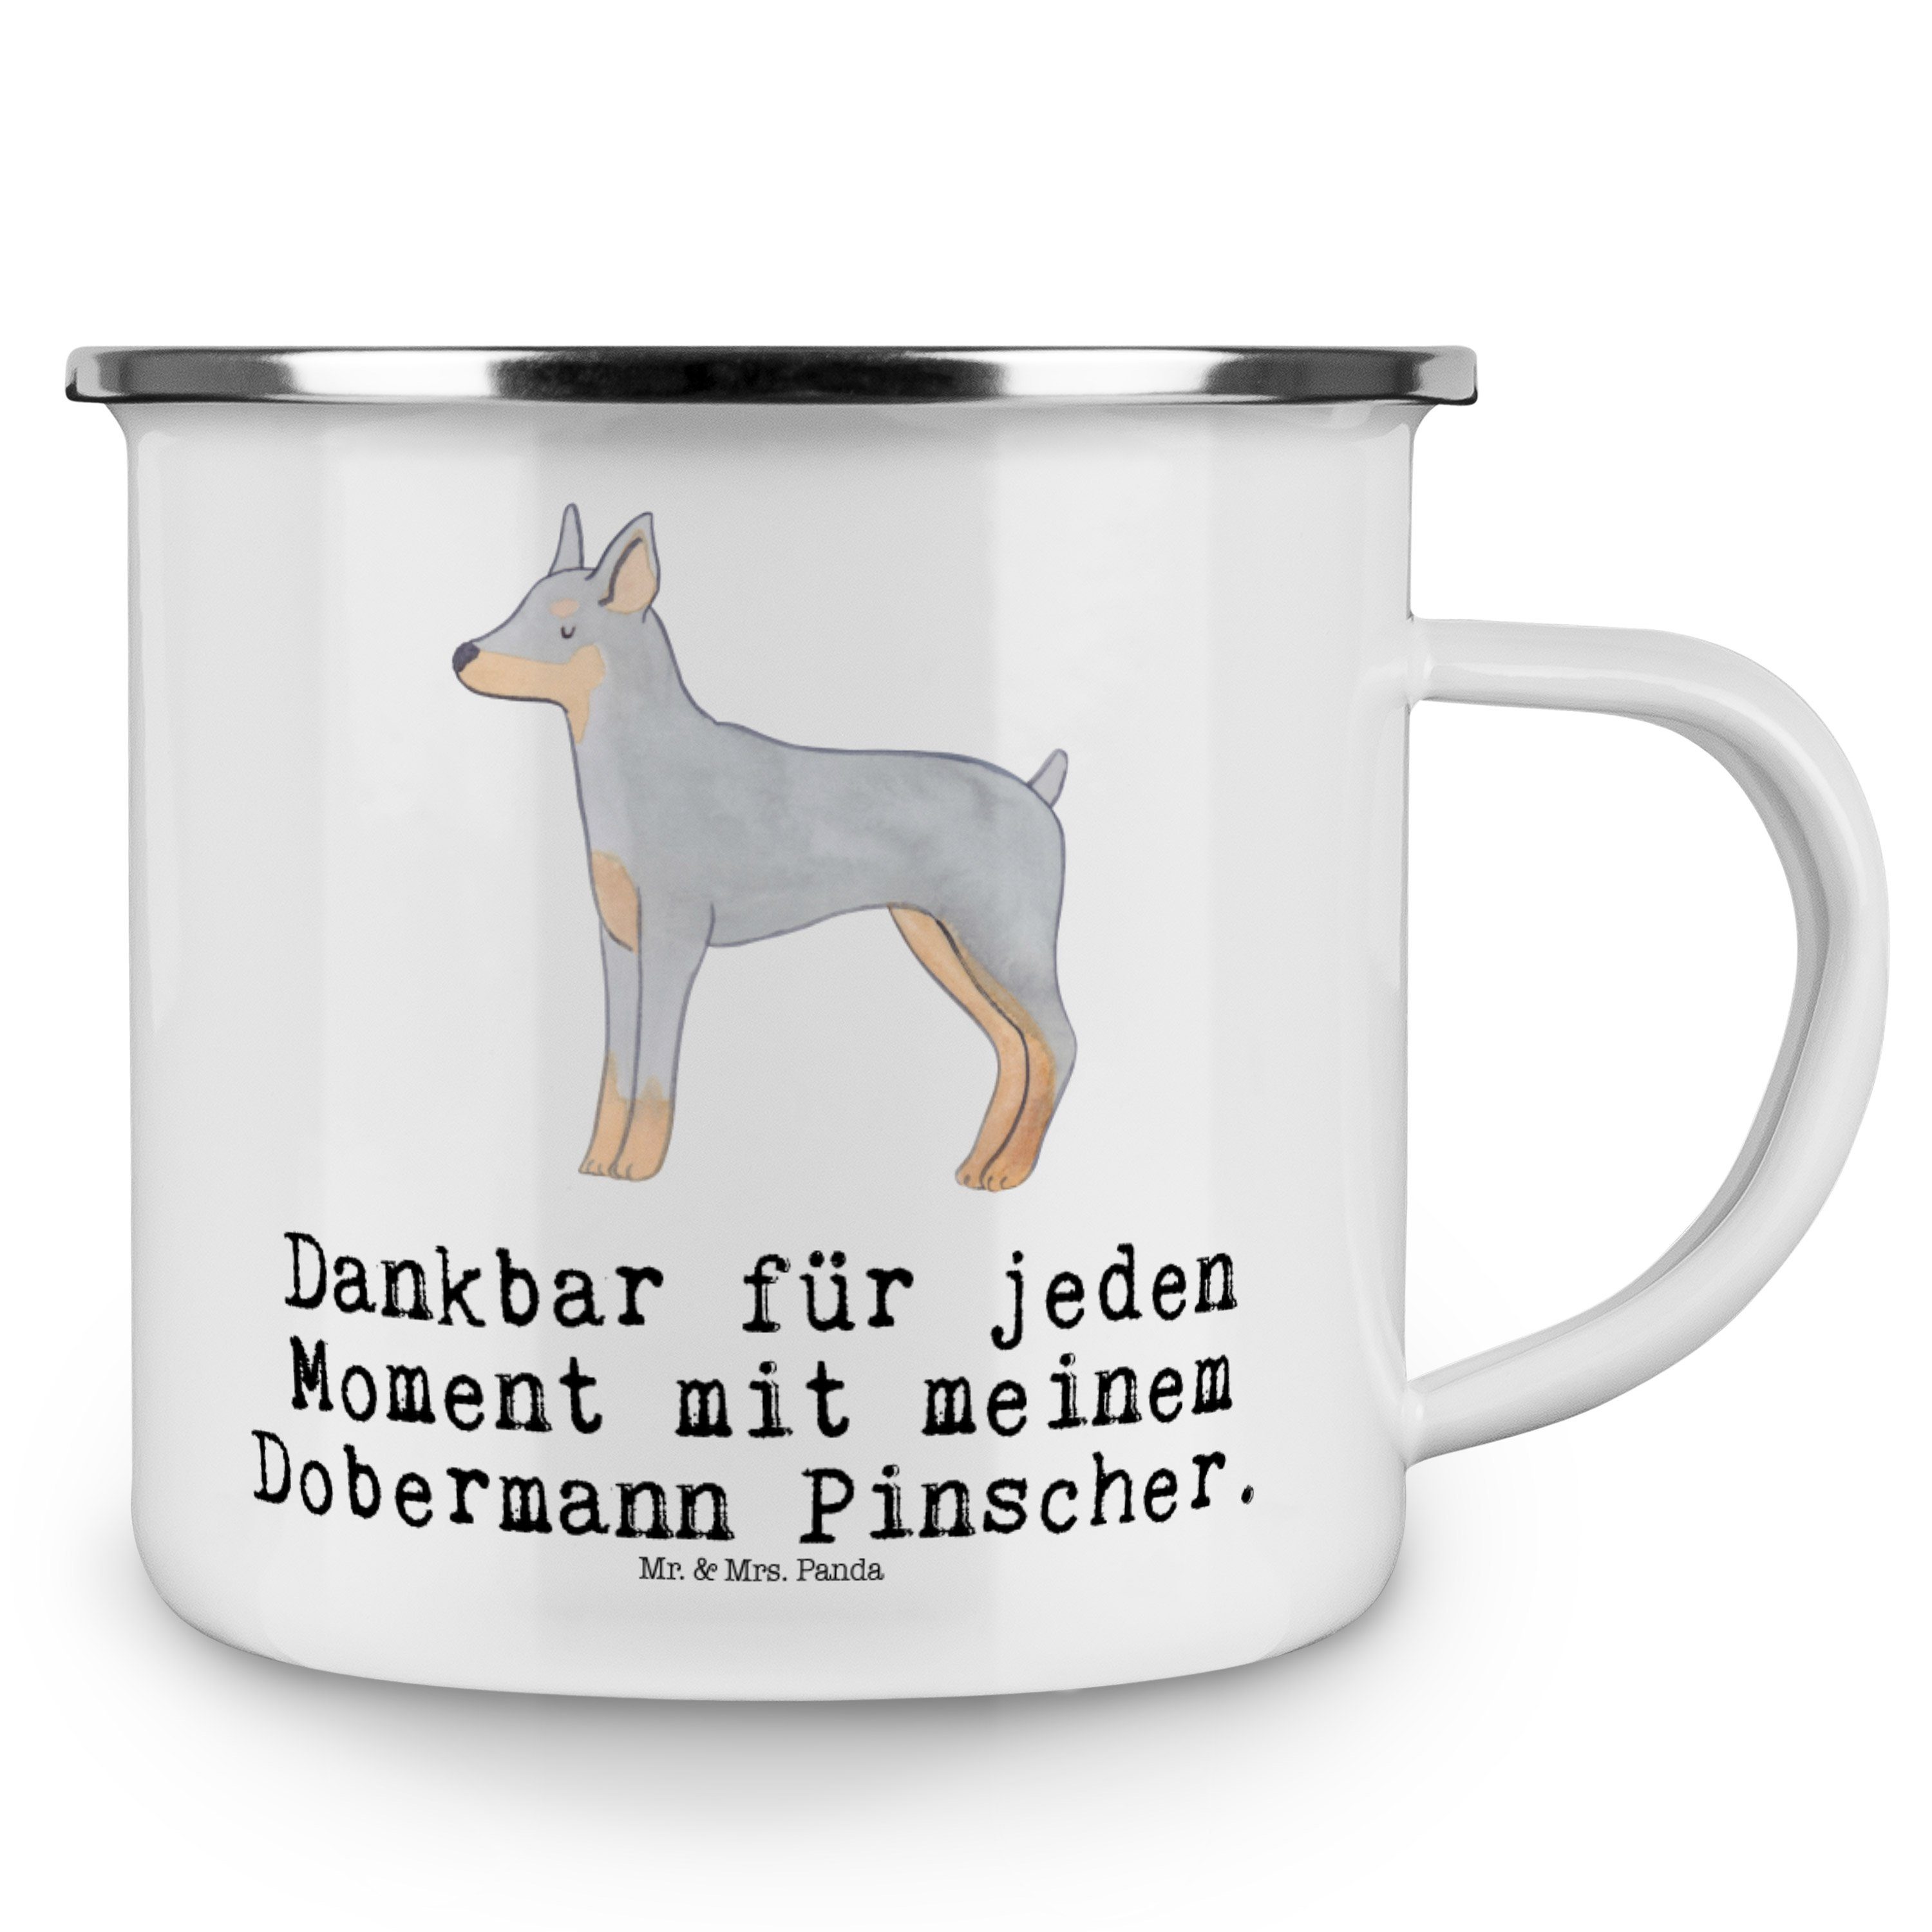 Mr. & Mrs. Panda Edelstahl Moment - Pinscher Weiß Hund, Becher - Dobermann Trinkbec, Emaille Geschenk